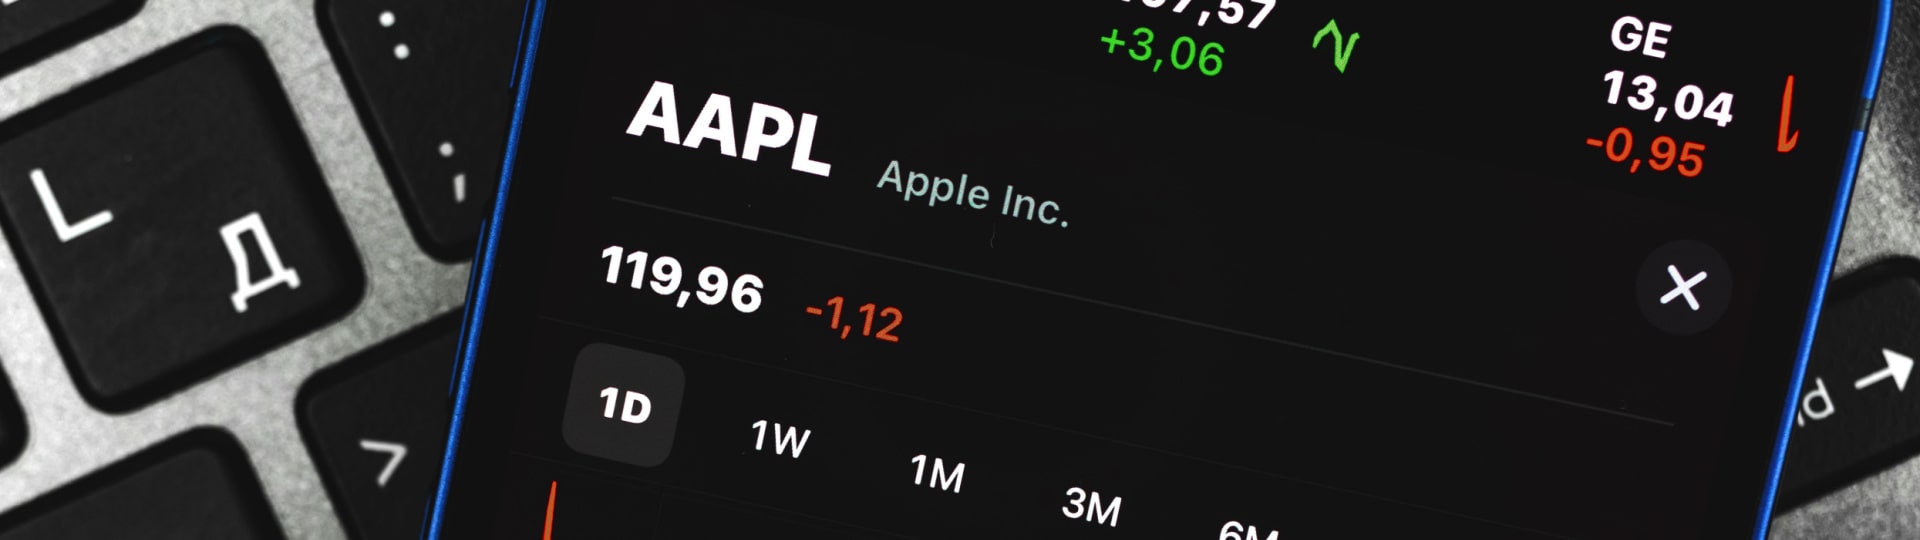 Tržní hodnota Applu sestoupila pod hranici dvou bilionů dolarů